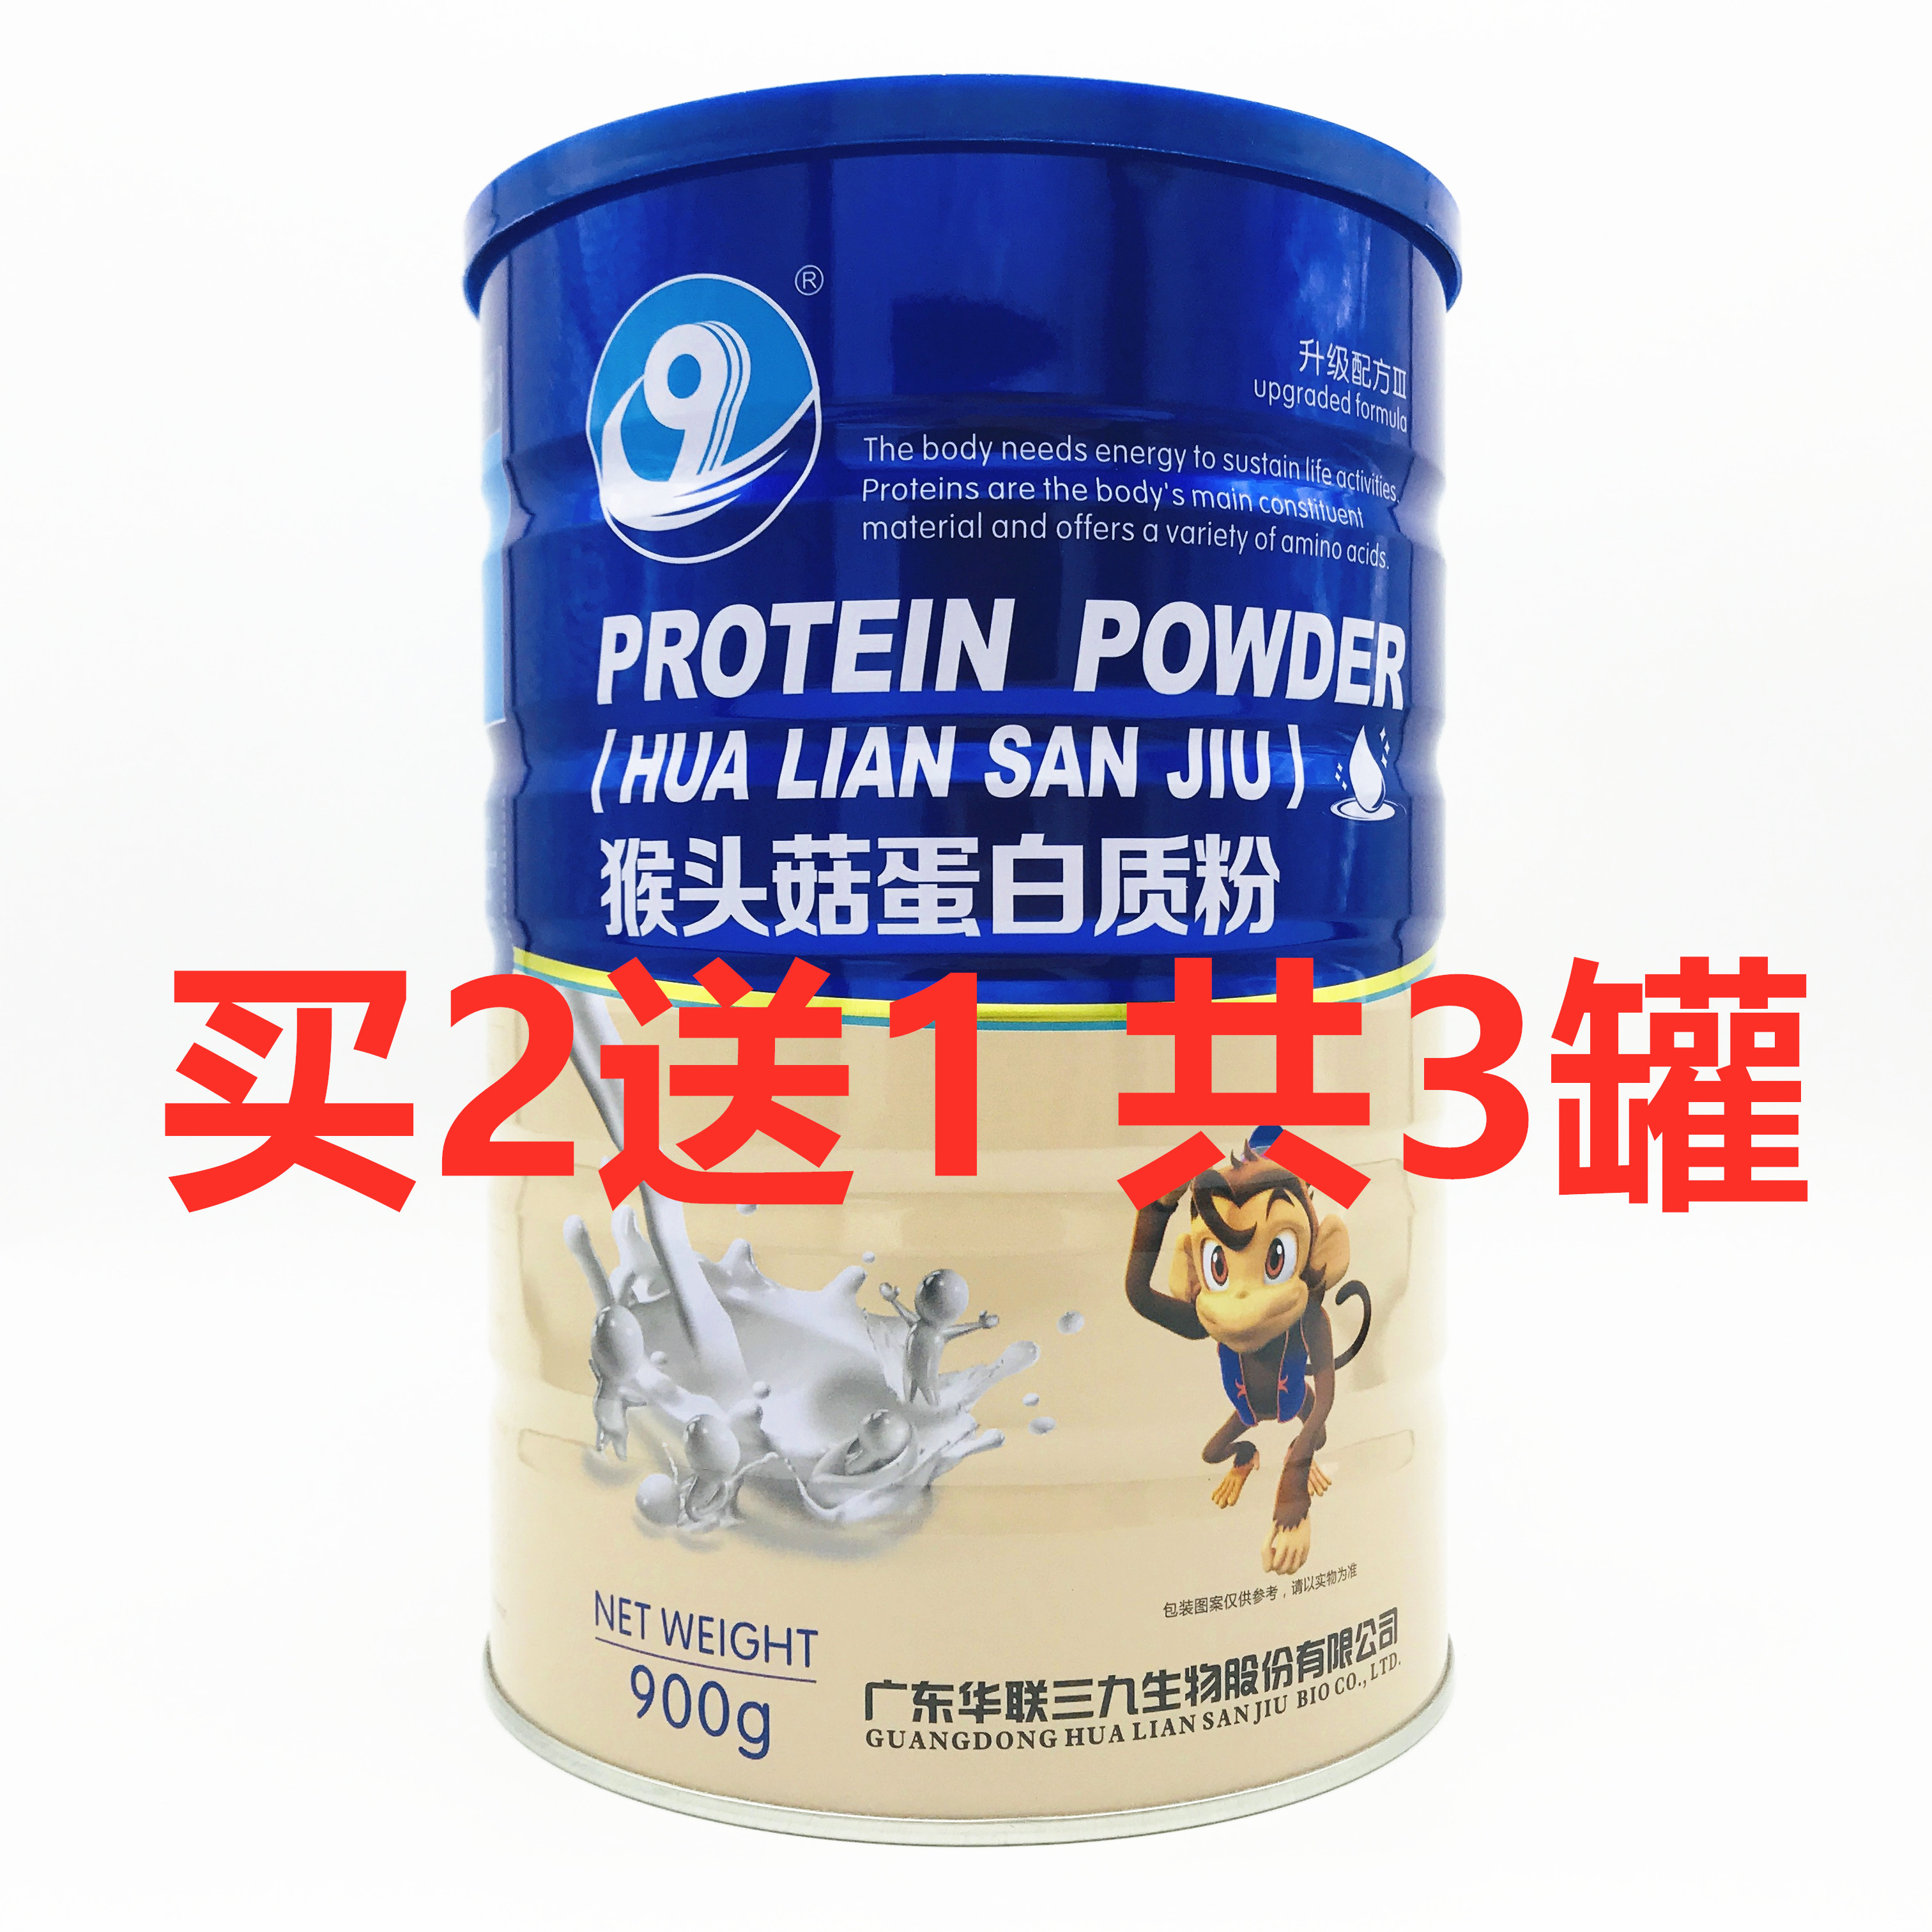 【买1罐送1罐 +4重礼品】华联生物猴头菇蛋白质粉